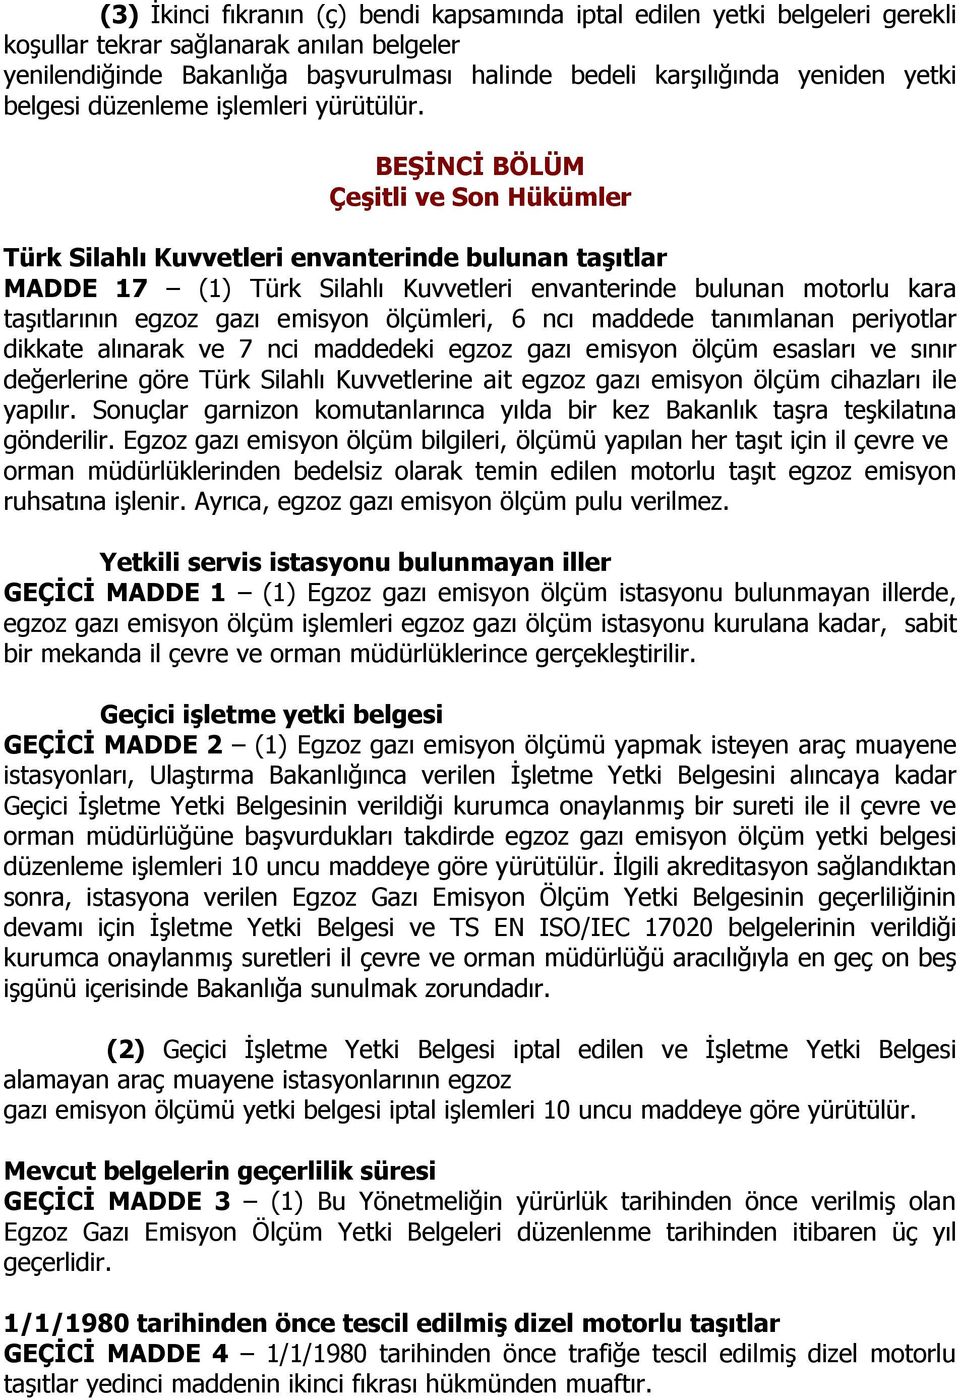 BEŞİNCİ BÖLÜM Çeşitli ve Son Hükümler Türk Silahlı Kuvvetleri envanterinde bulunan taşıtlar MADDE 17 (1) Türk Silahlı Kuvvetleri envanterinde bulunan motorlu kara taşıtlarının egzoz gazı emisyon